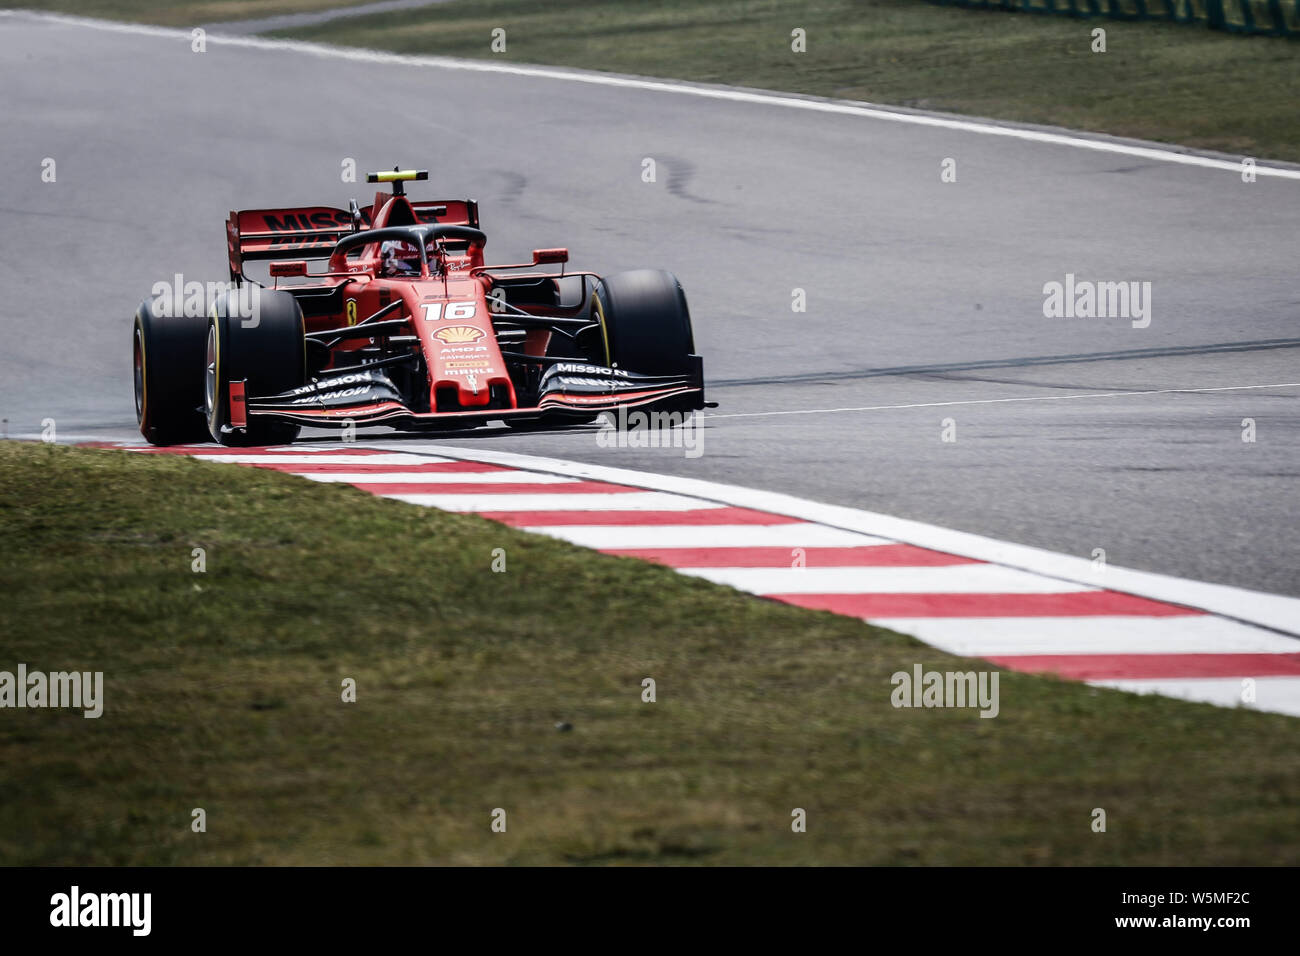 Pilote automobile monégasque Charles Leclerc de la Scuderia Ferrari en compétition au cours de la séance de qualifications de la Formule 1 Grand Prix de Chine Heineken Banque D'Images